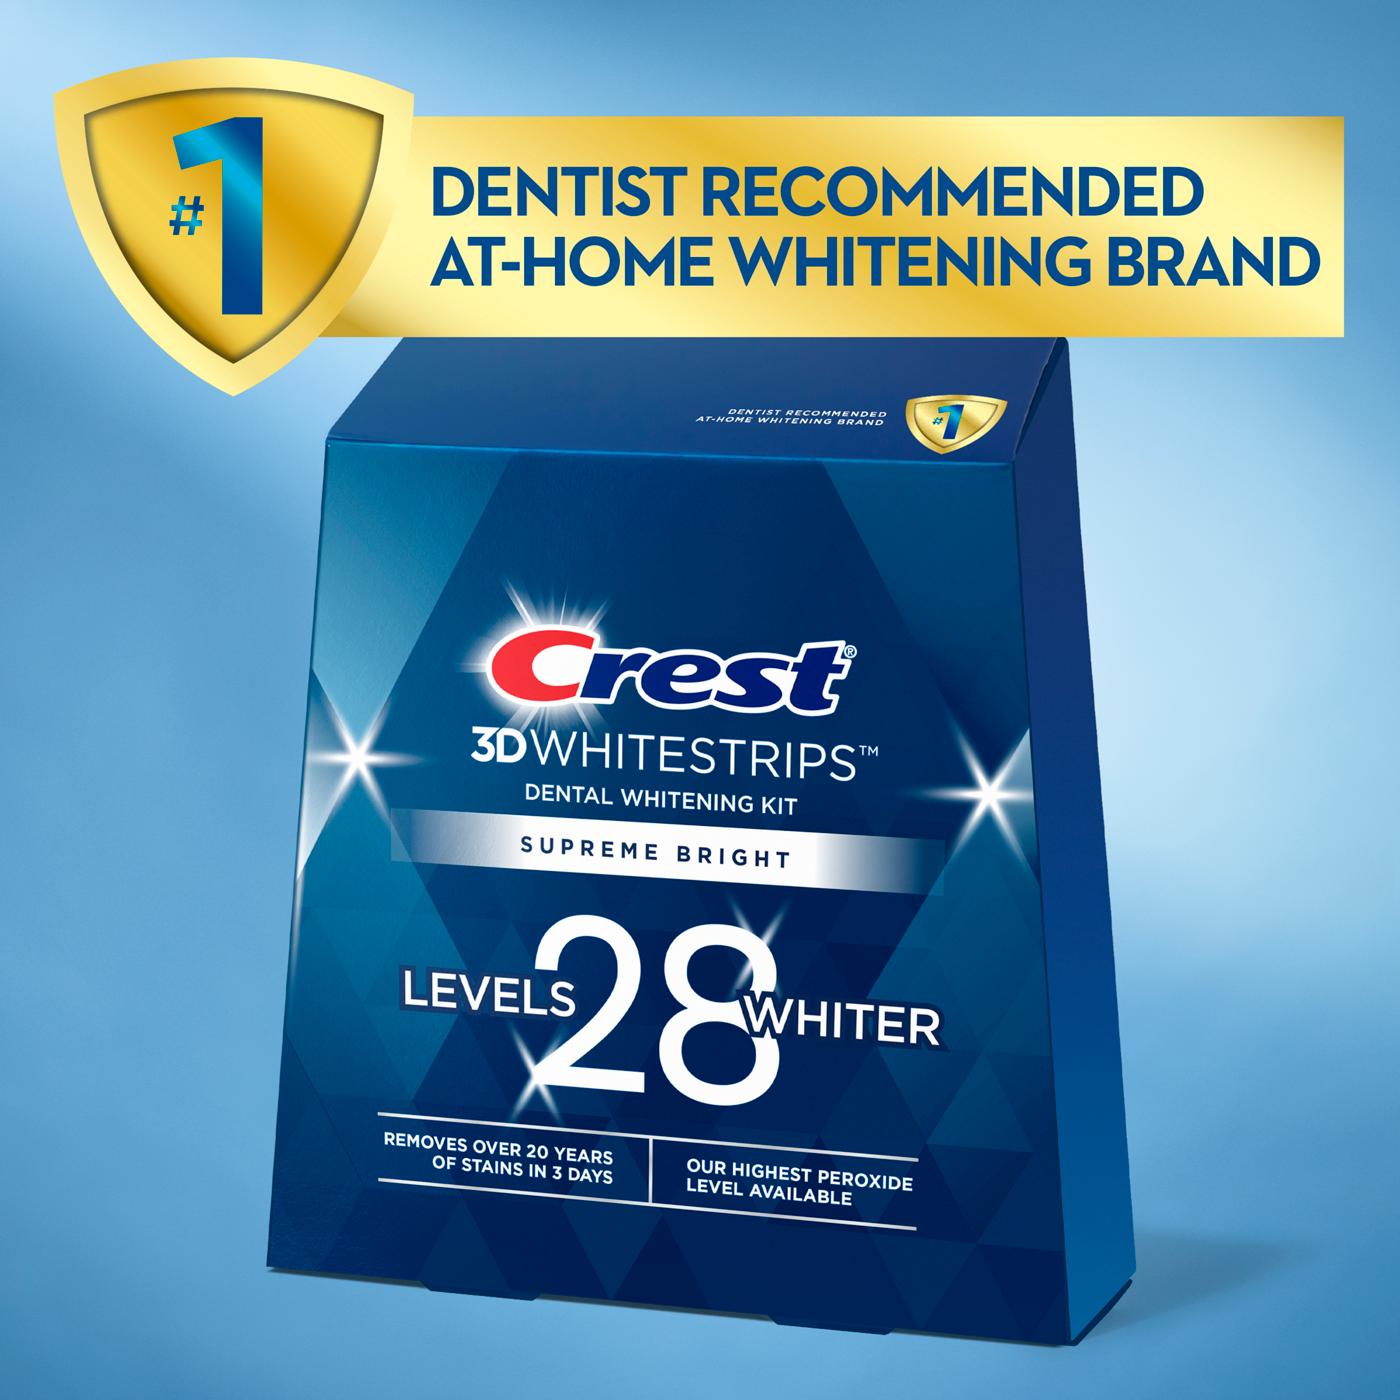 Crest 3D Whitestrips Supreme Bright Dental Whitening Kit; image 2 of 7